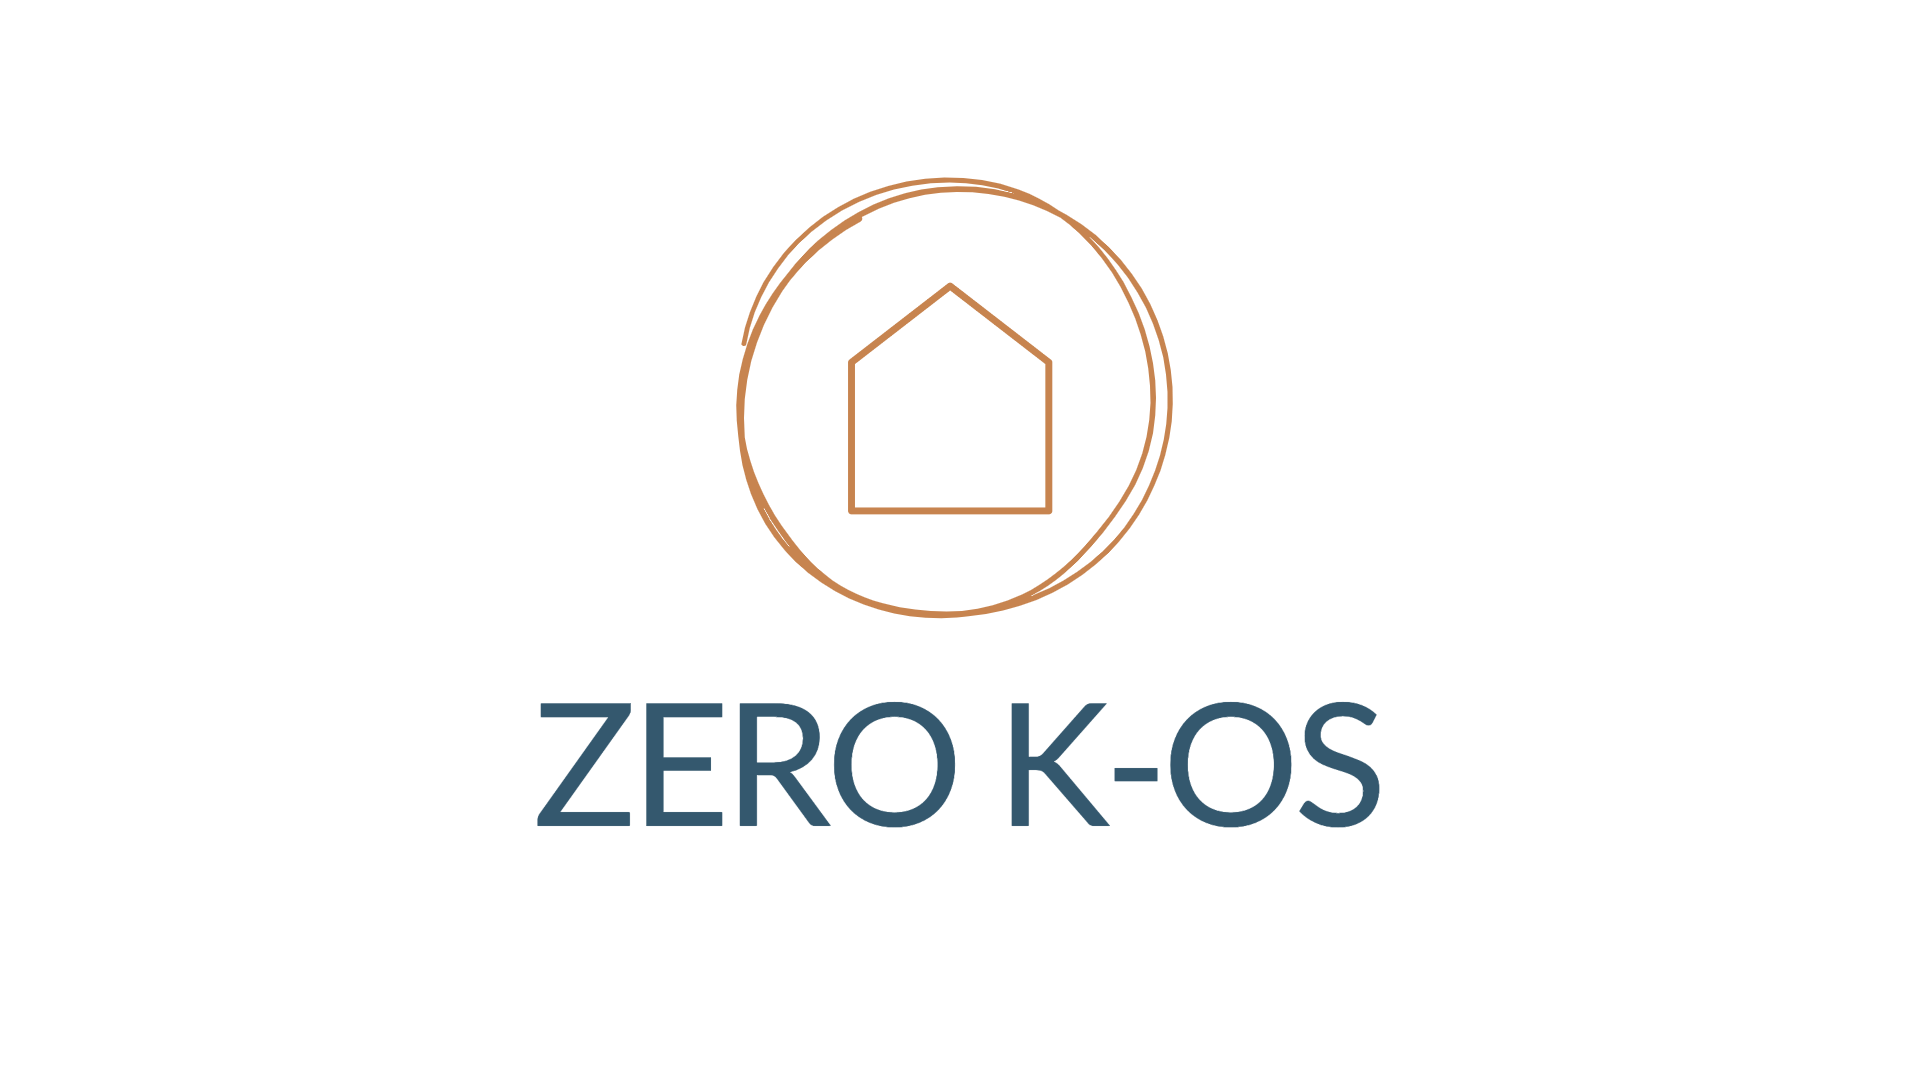 Zero K-os